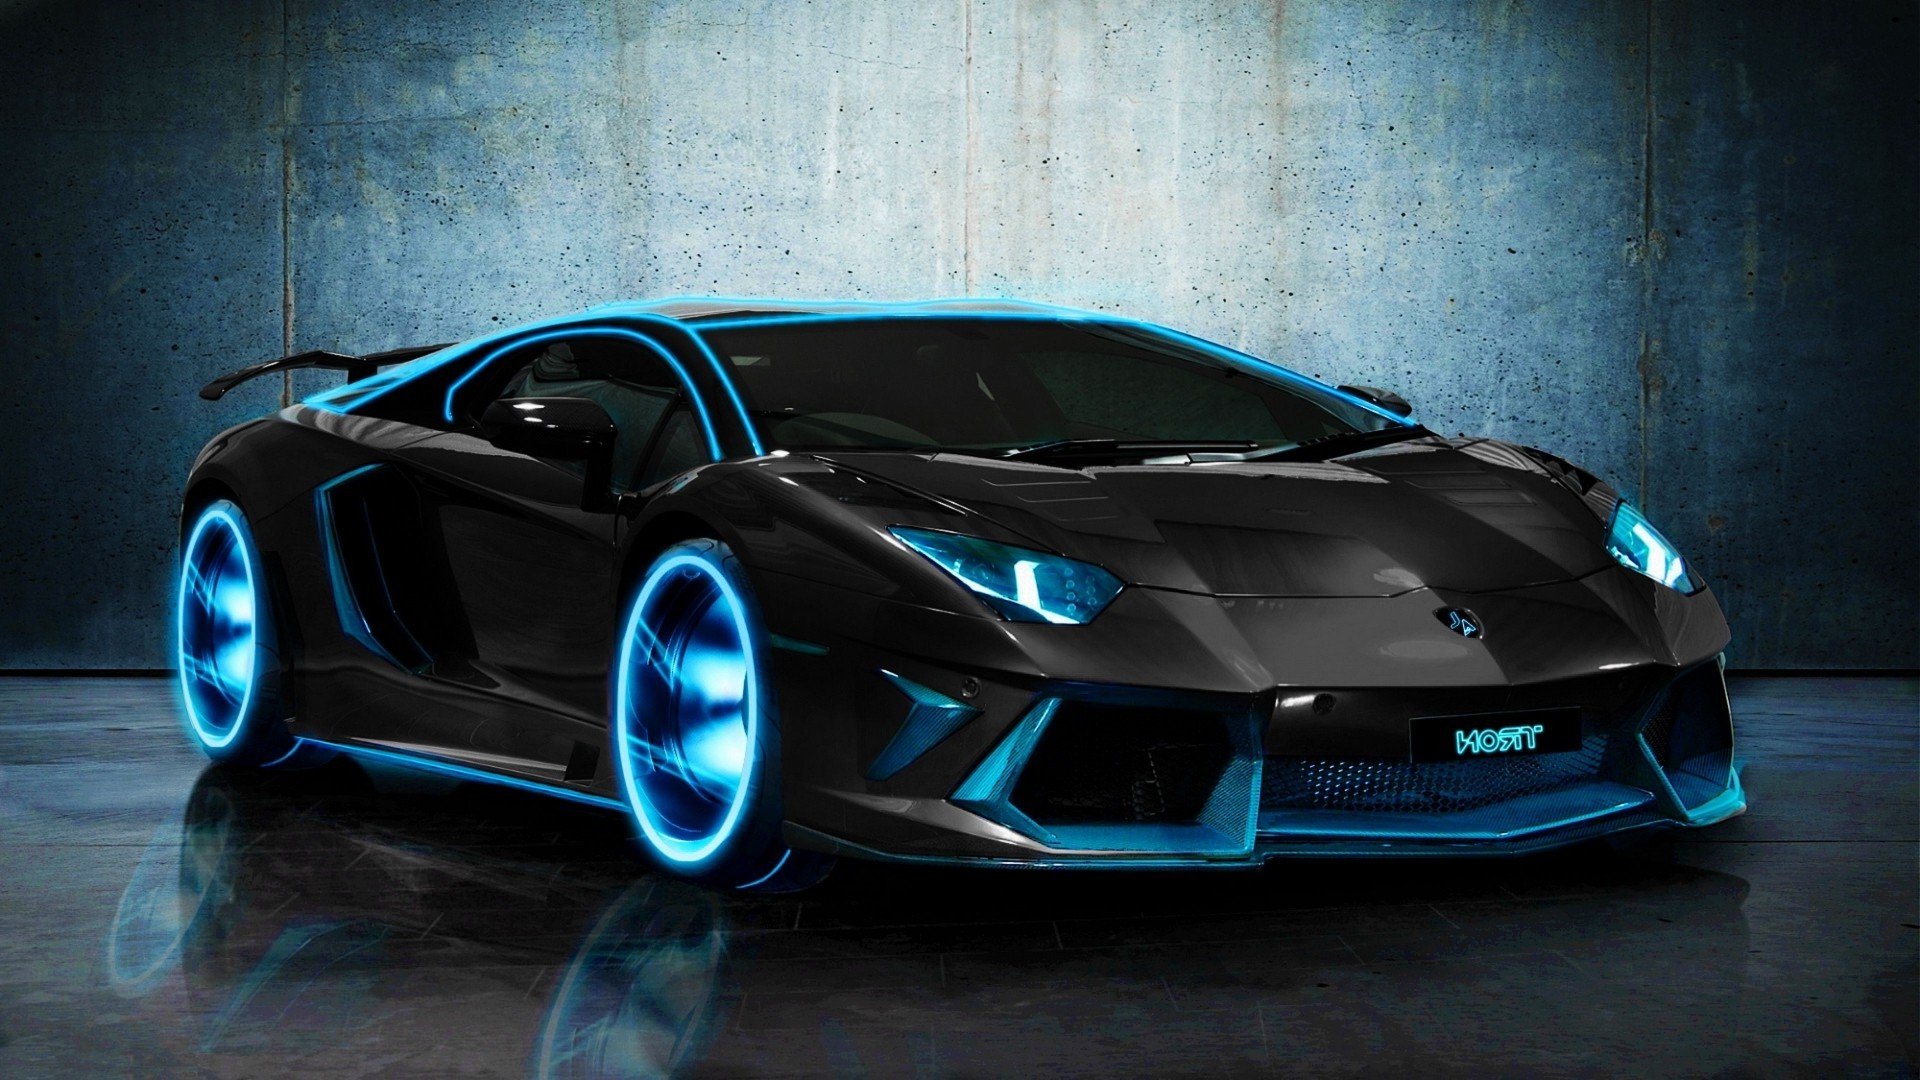 Lamborghini backgrounds